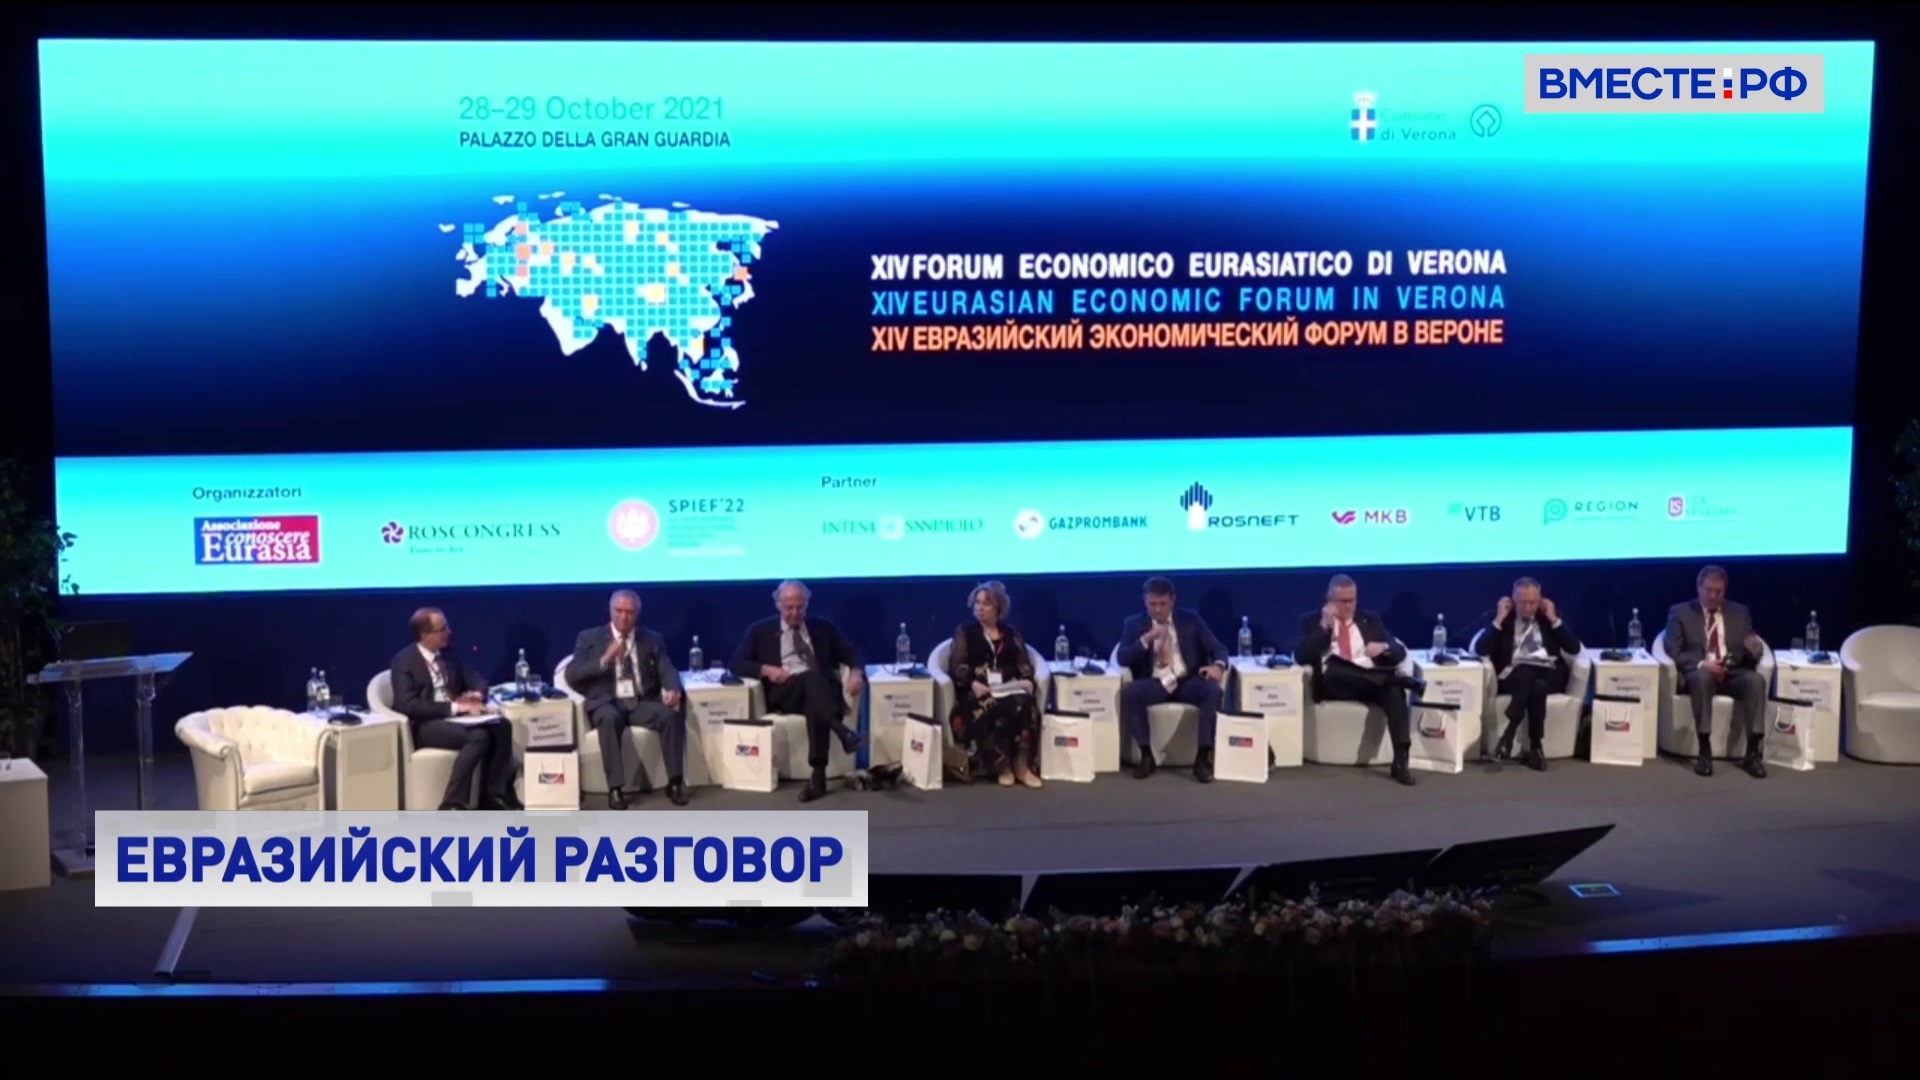 Рапорта рассказал об основных темах Евразийского экономического форума